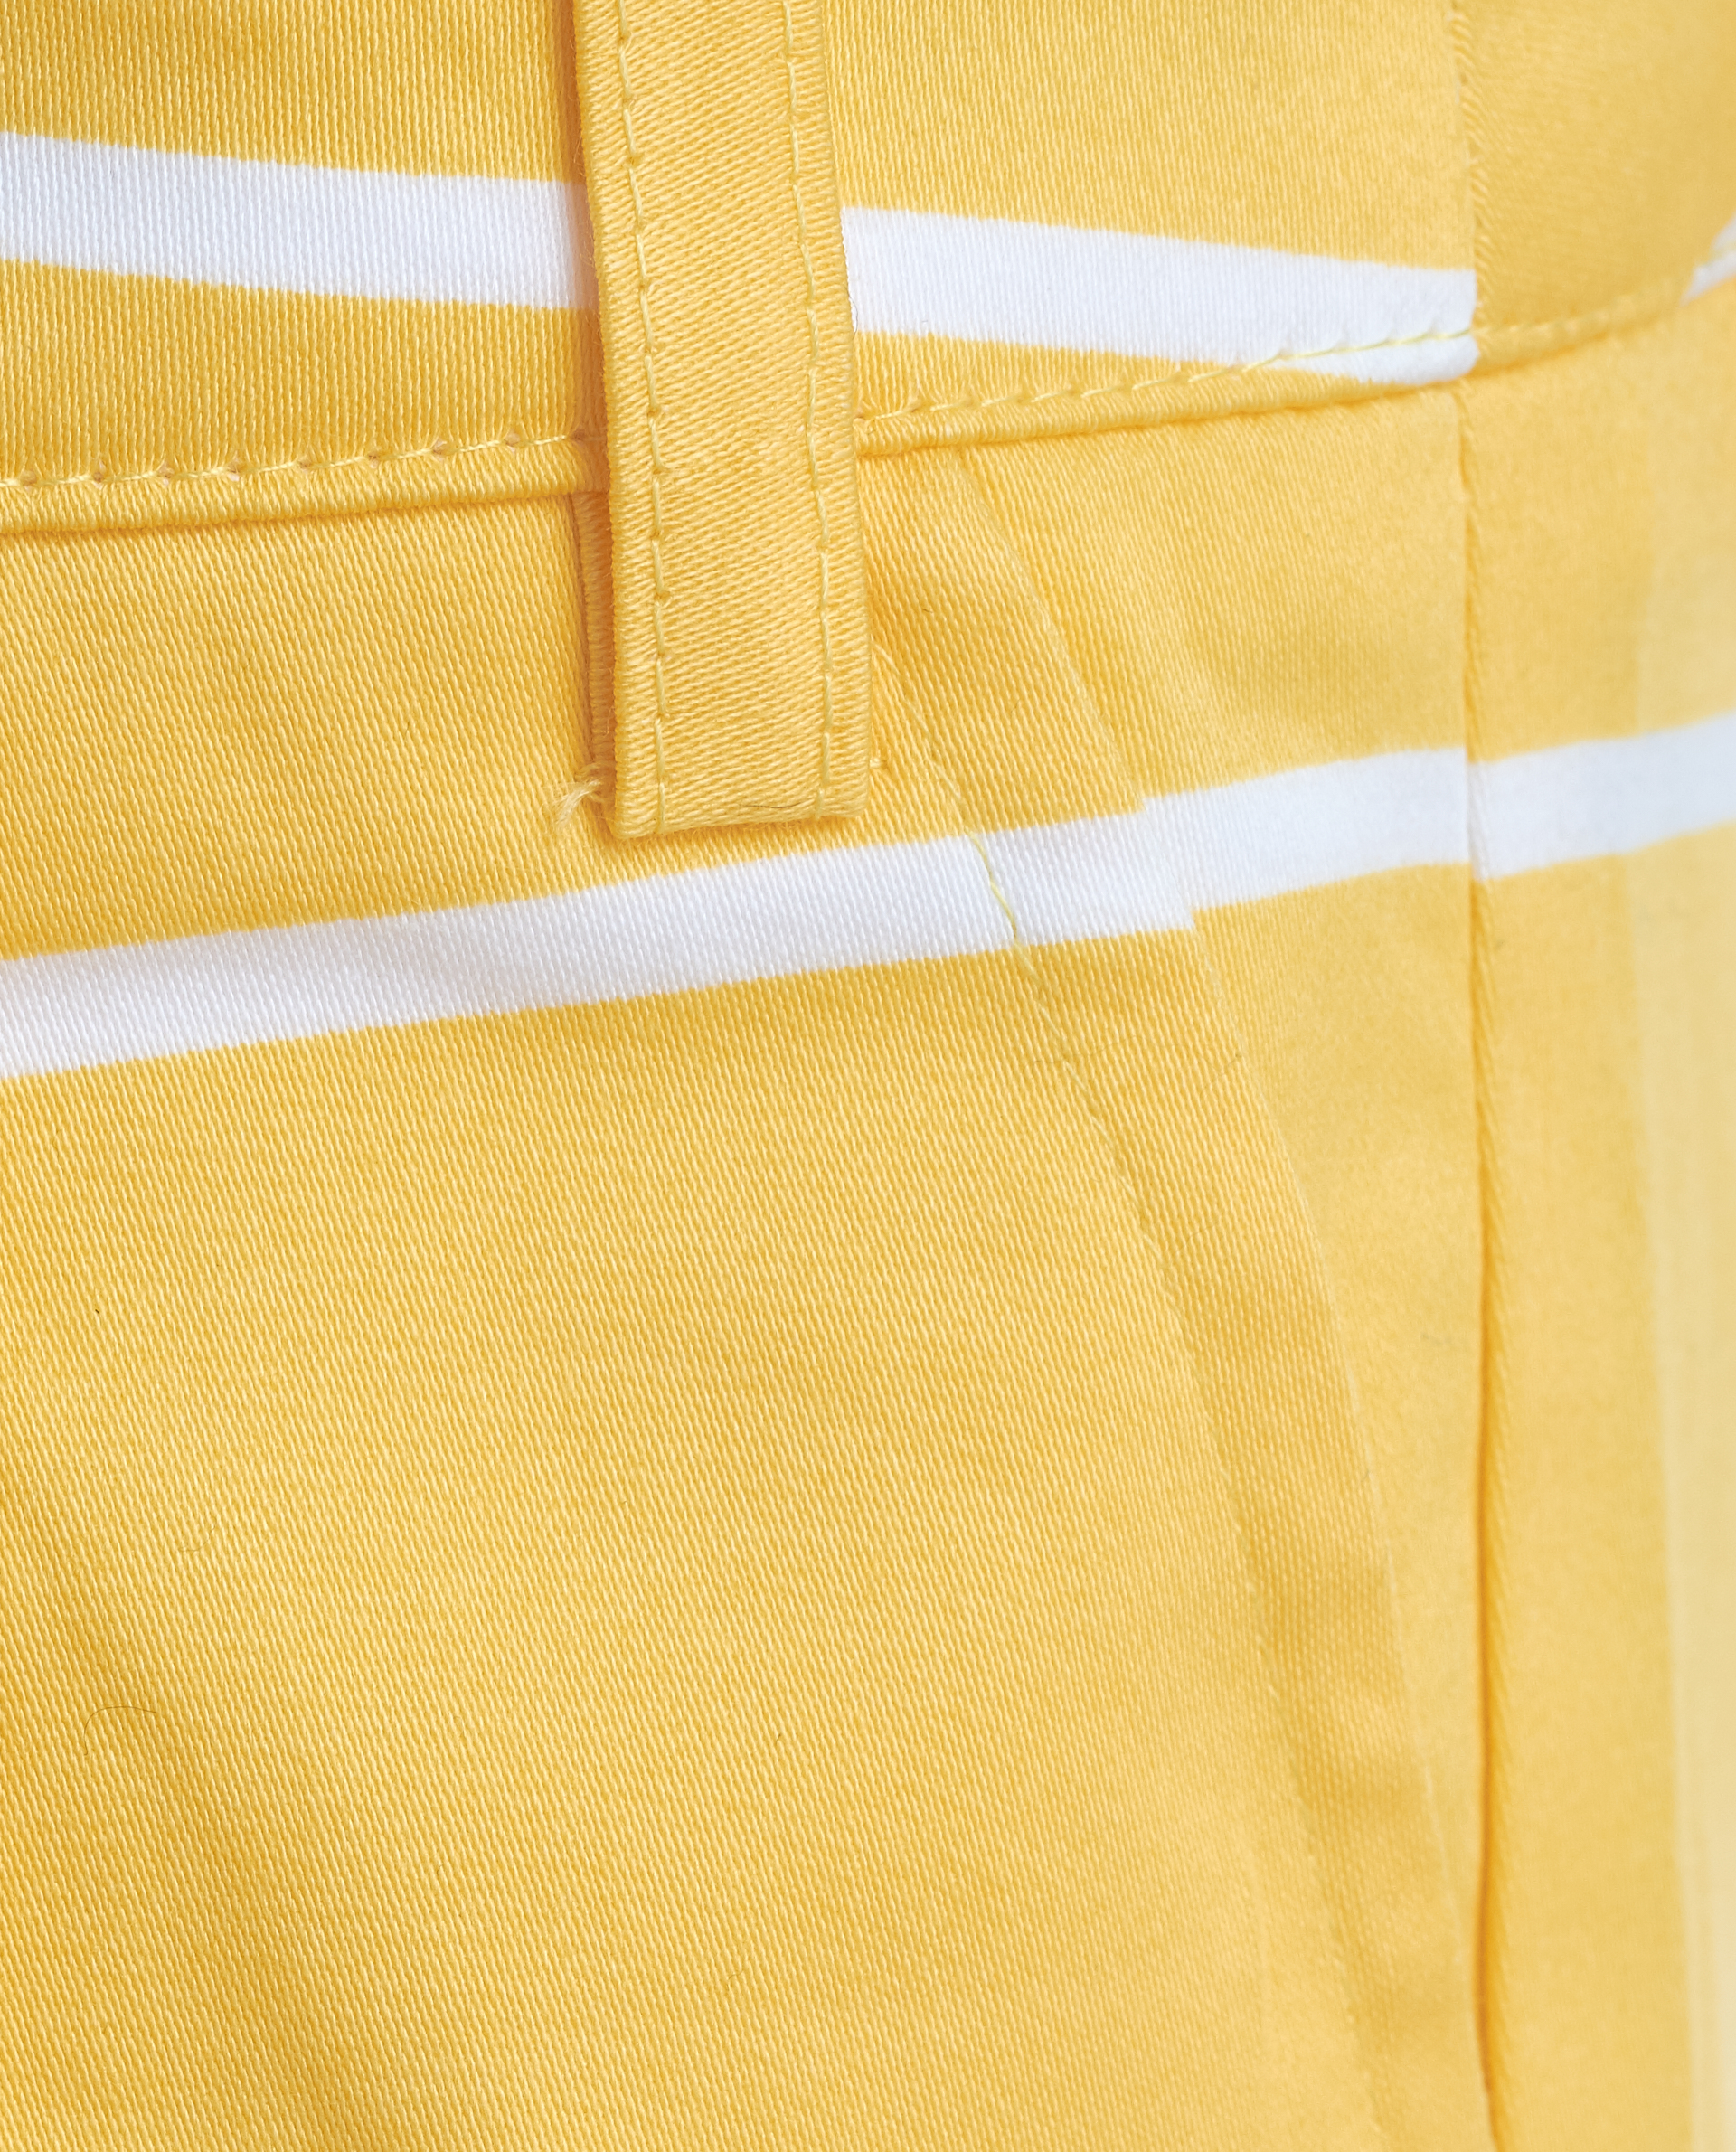 Желтые шорты Gulliver 11901GMC6003, размер 110, цвет желтый - фото 4